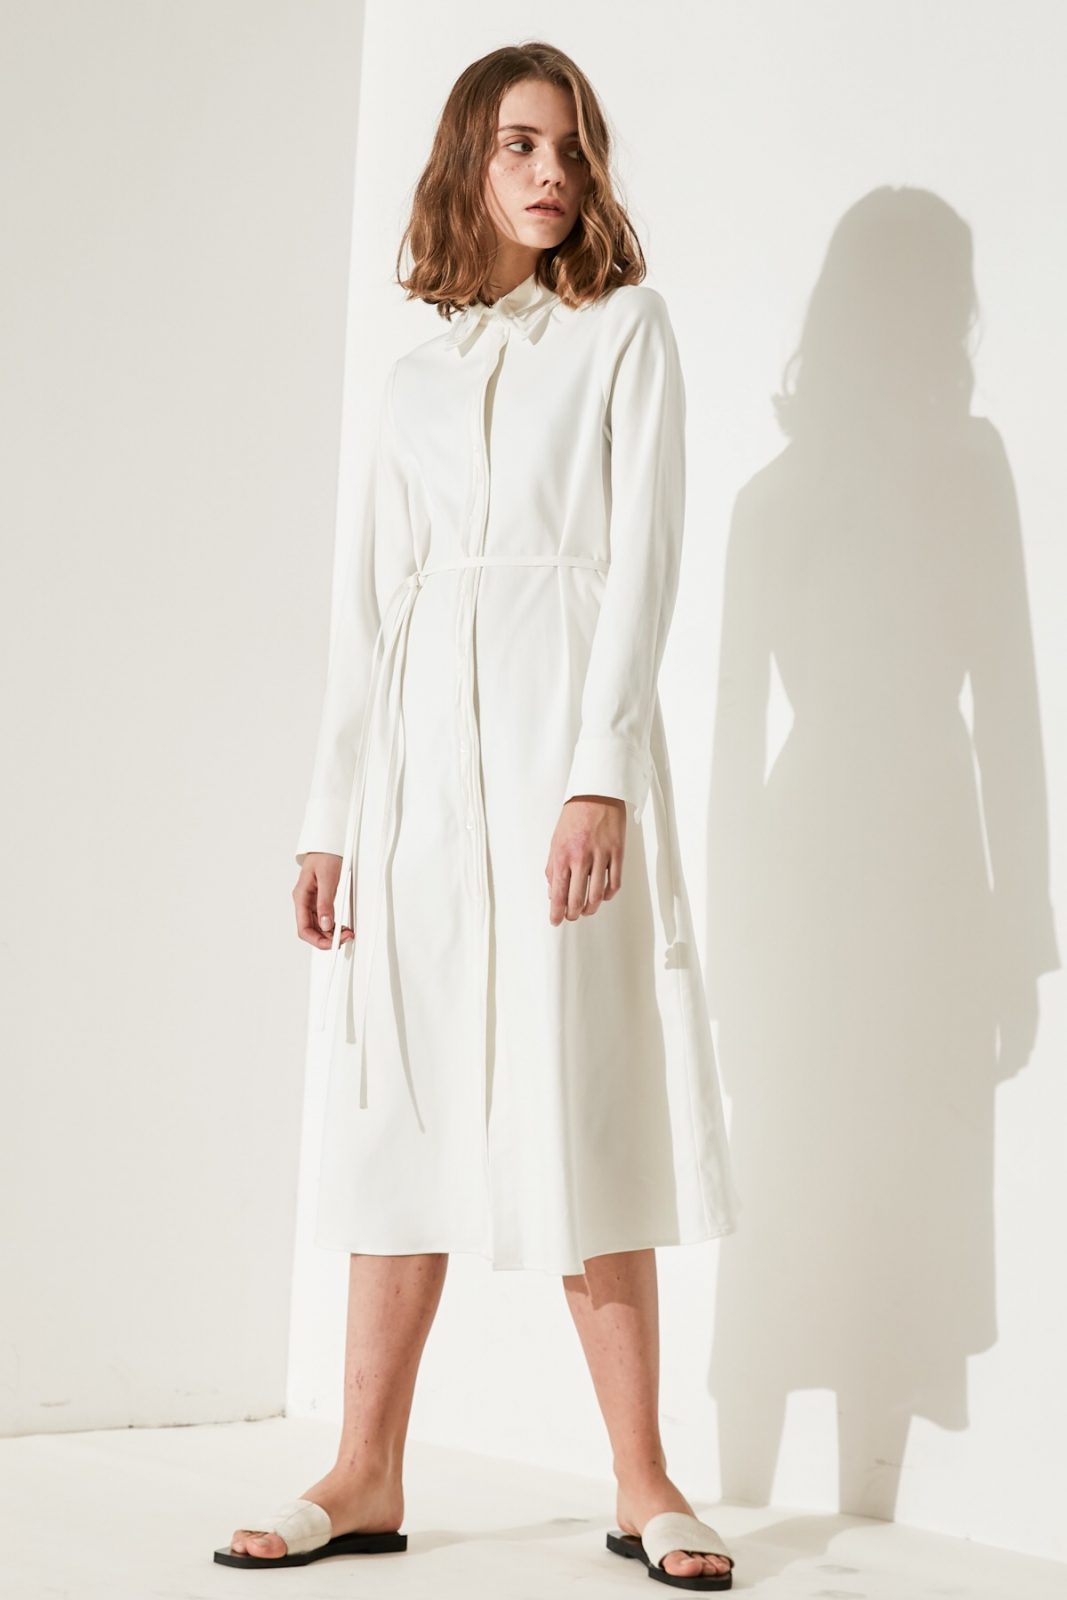 SKYE minimalist women clothing fashion Katie Chiffon Dress white